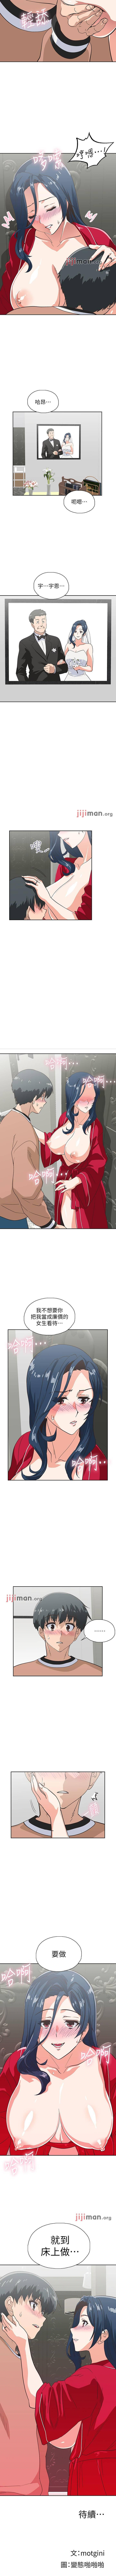 【周四连载】梦幻速食店（作者：motgini&變態啪啪啪） 第1~38话 183